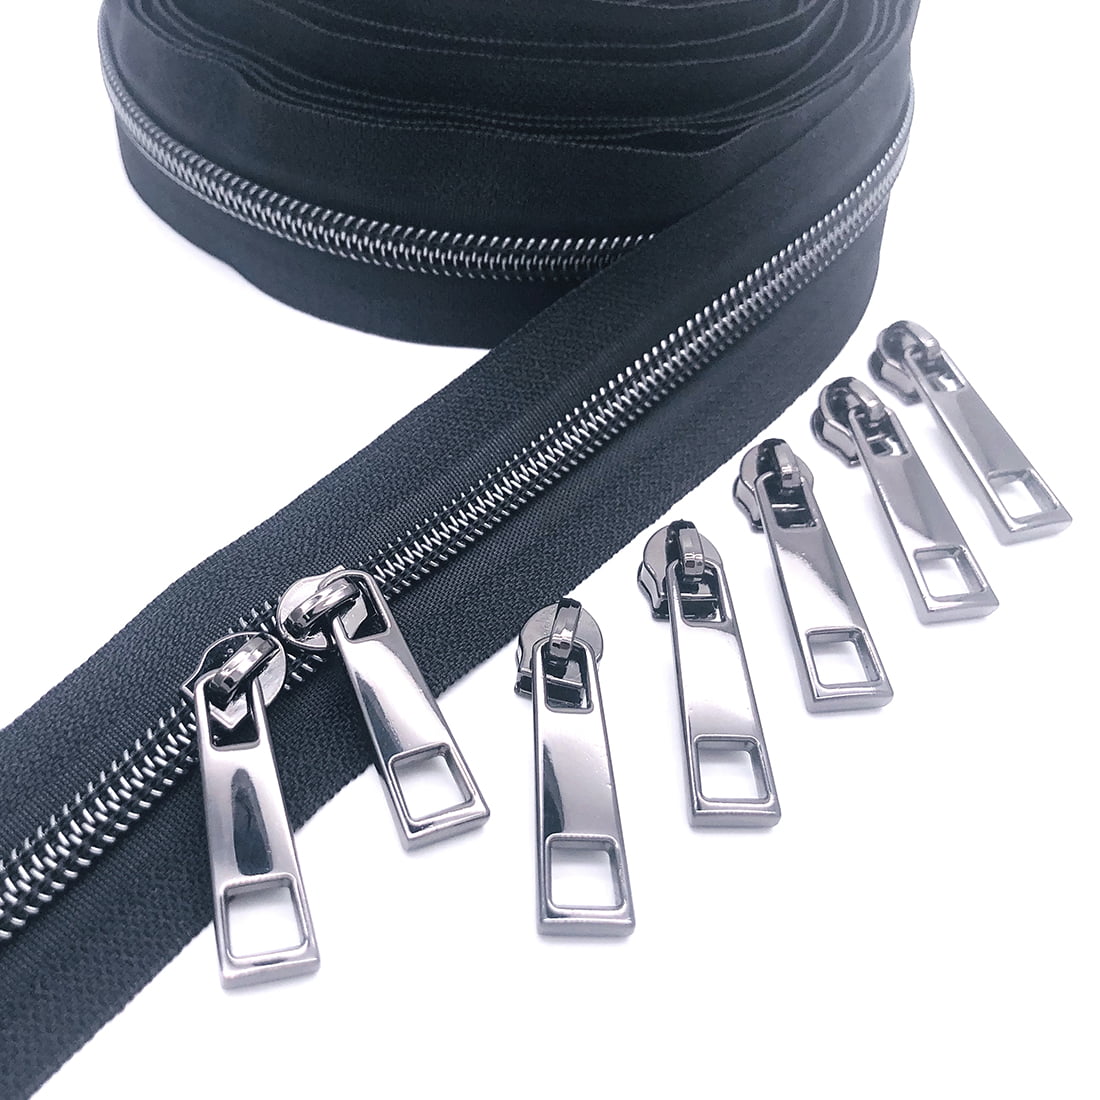 Zipper Pull for #5 Coil Zipper - Matte Silver - Ghee's